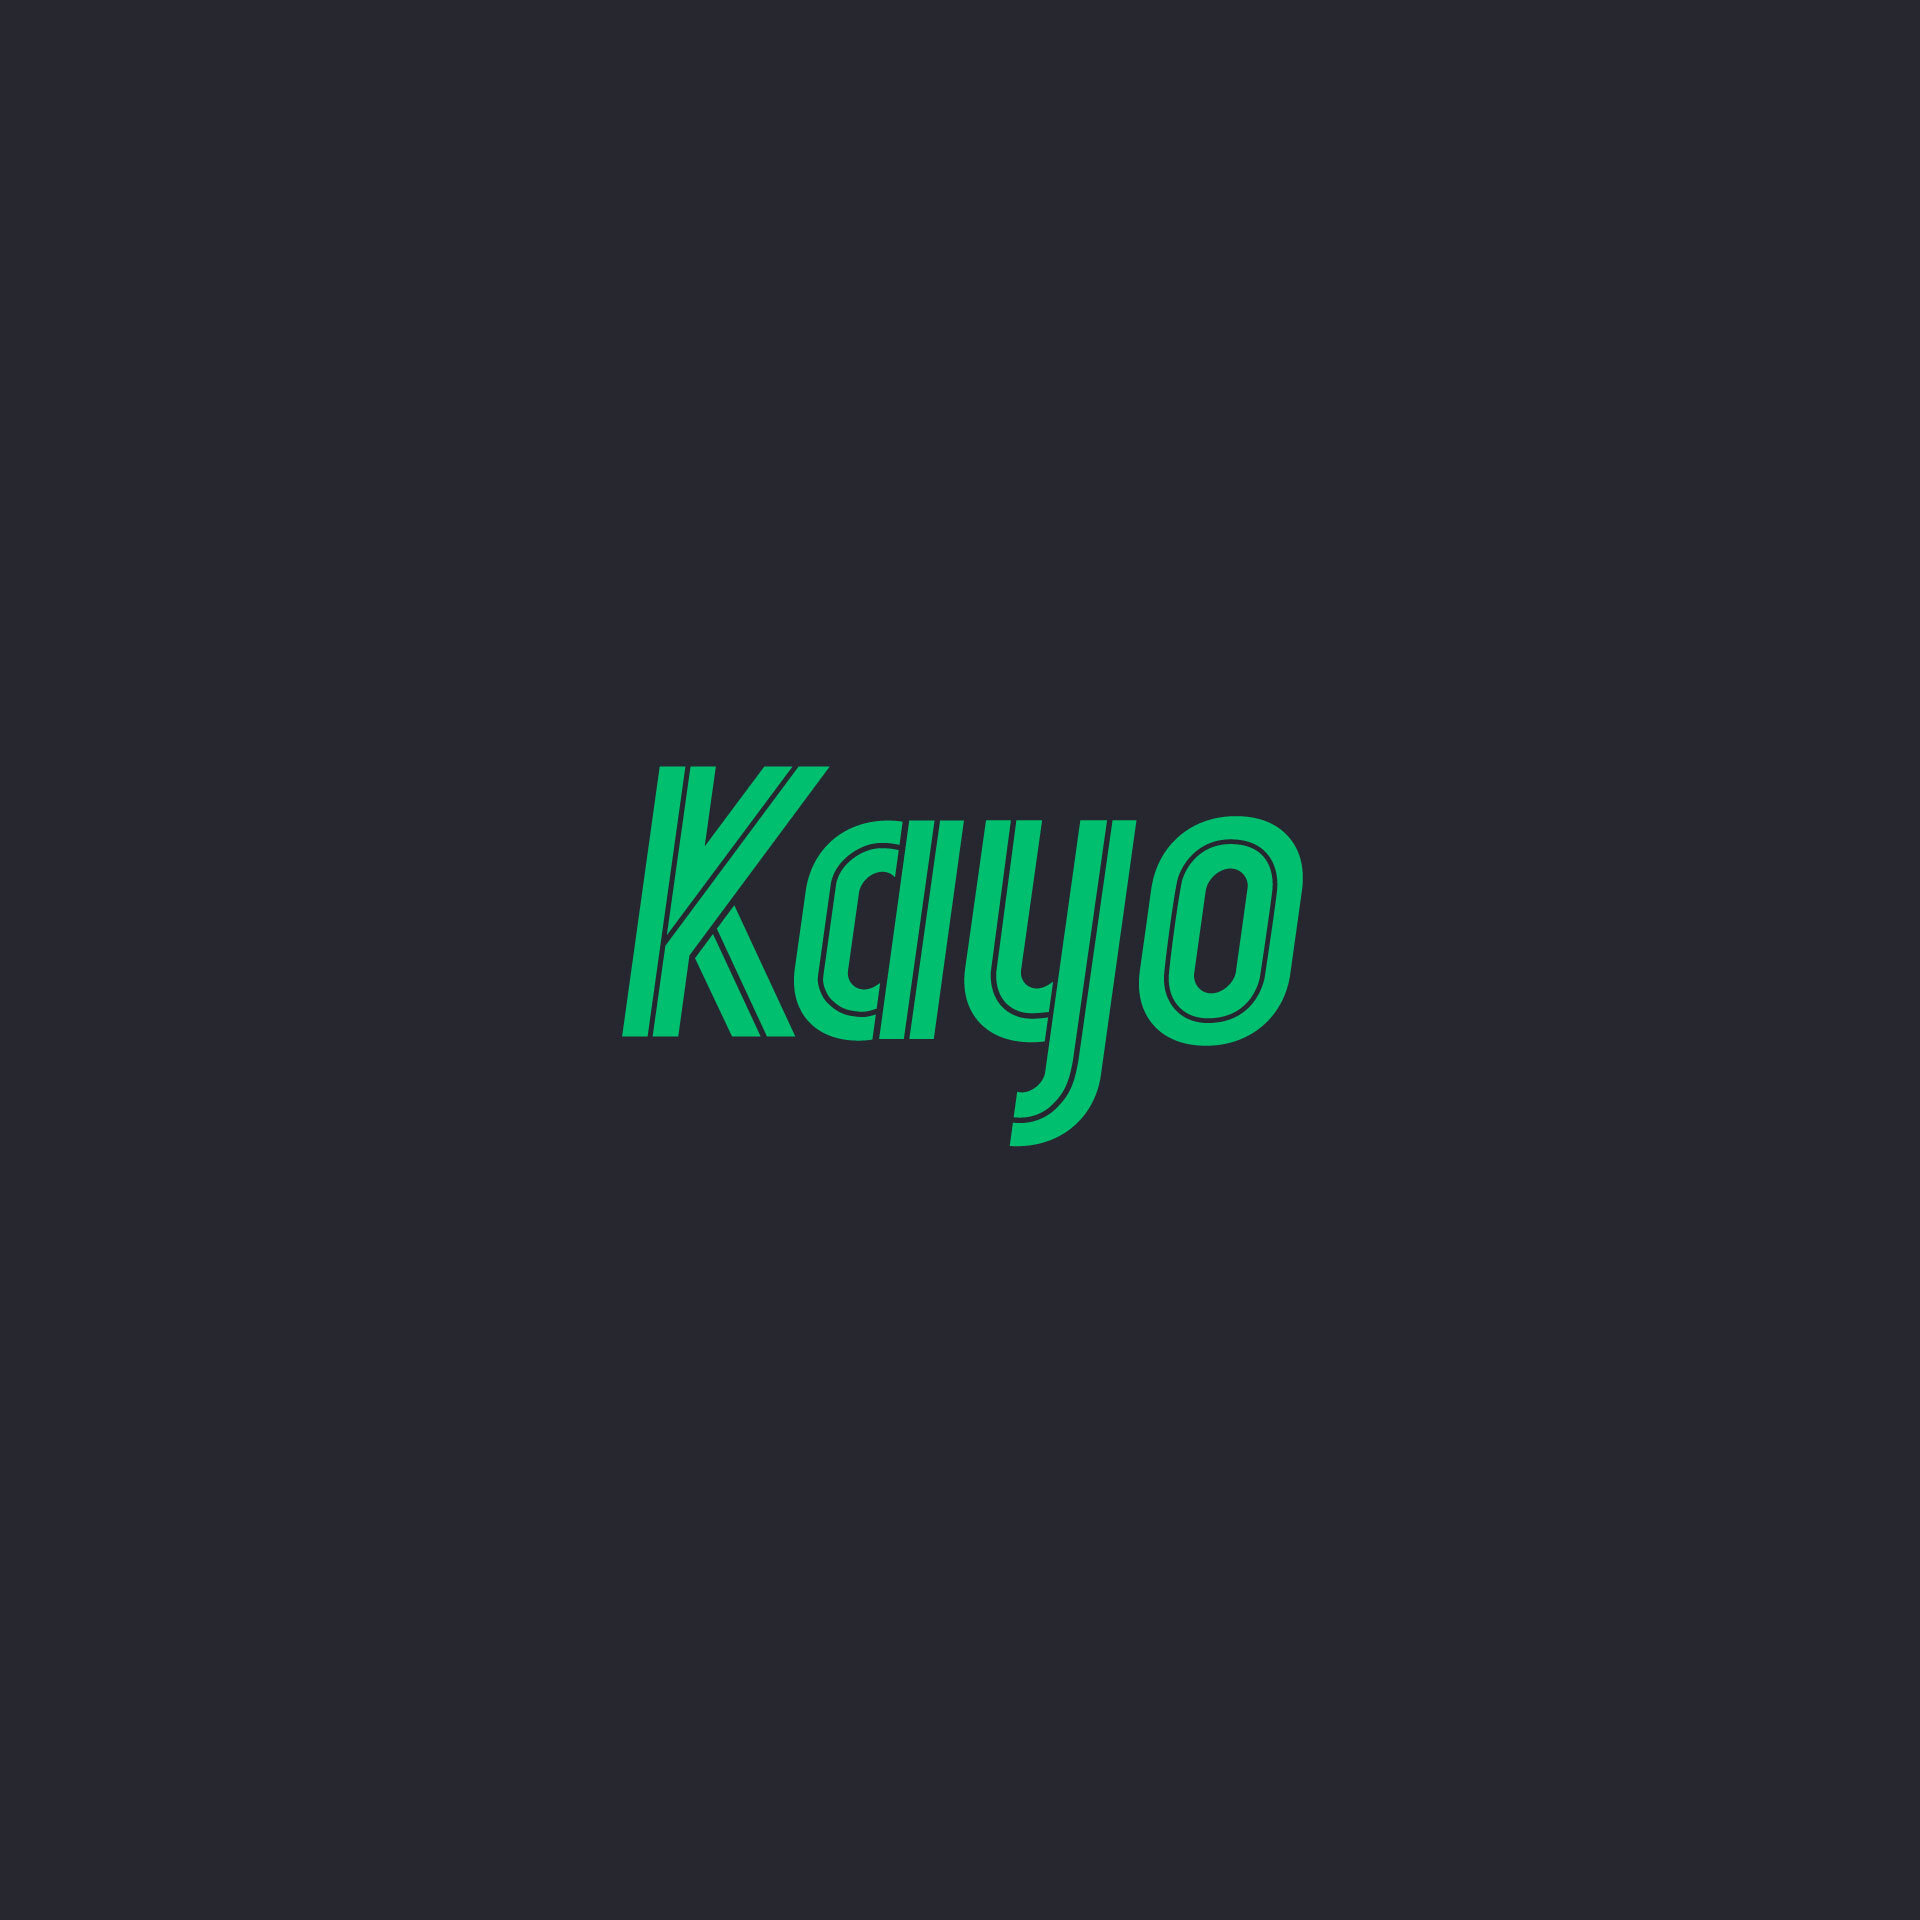 KAYO_01.jpg